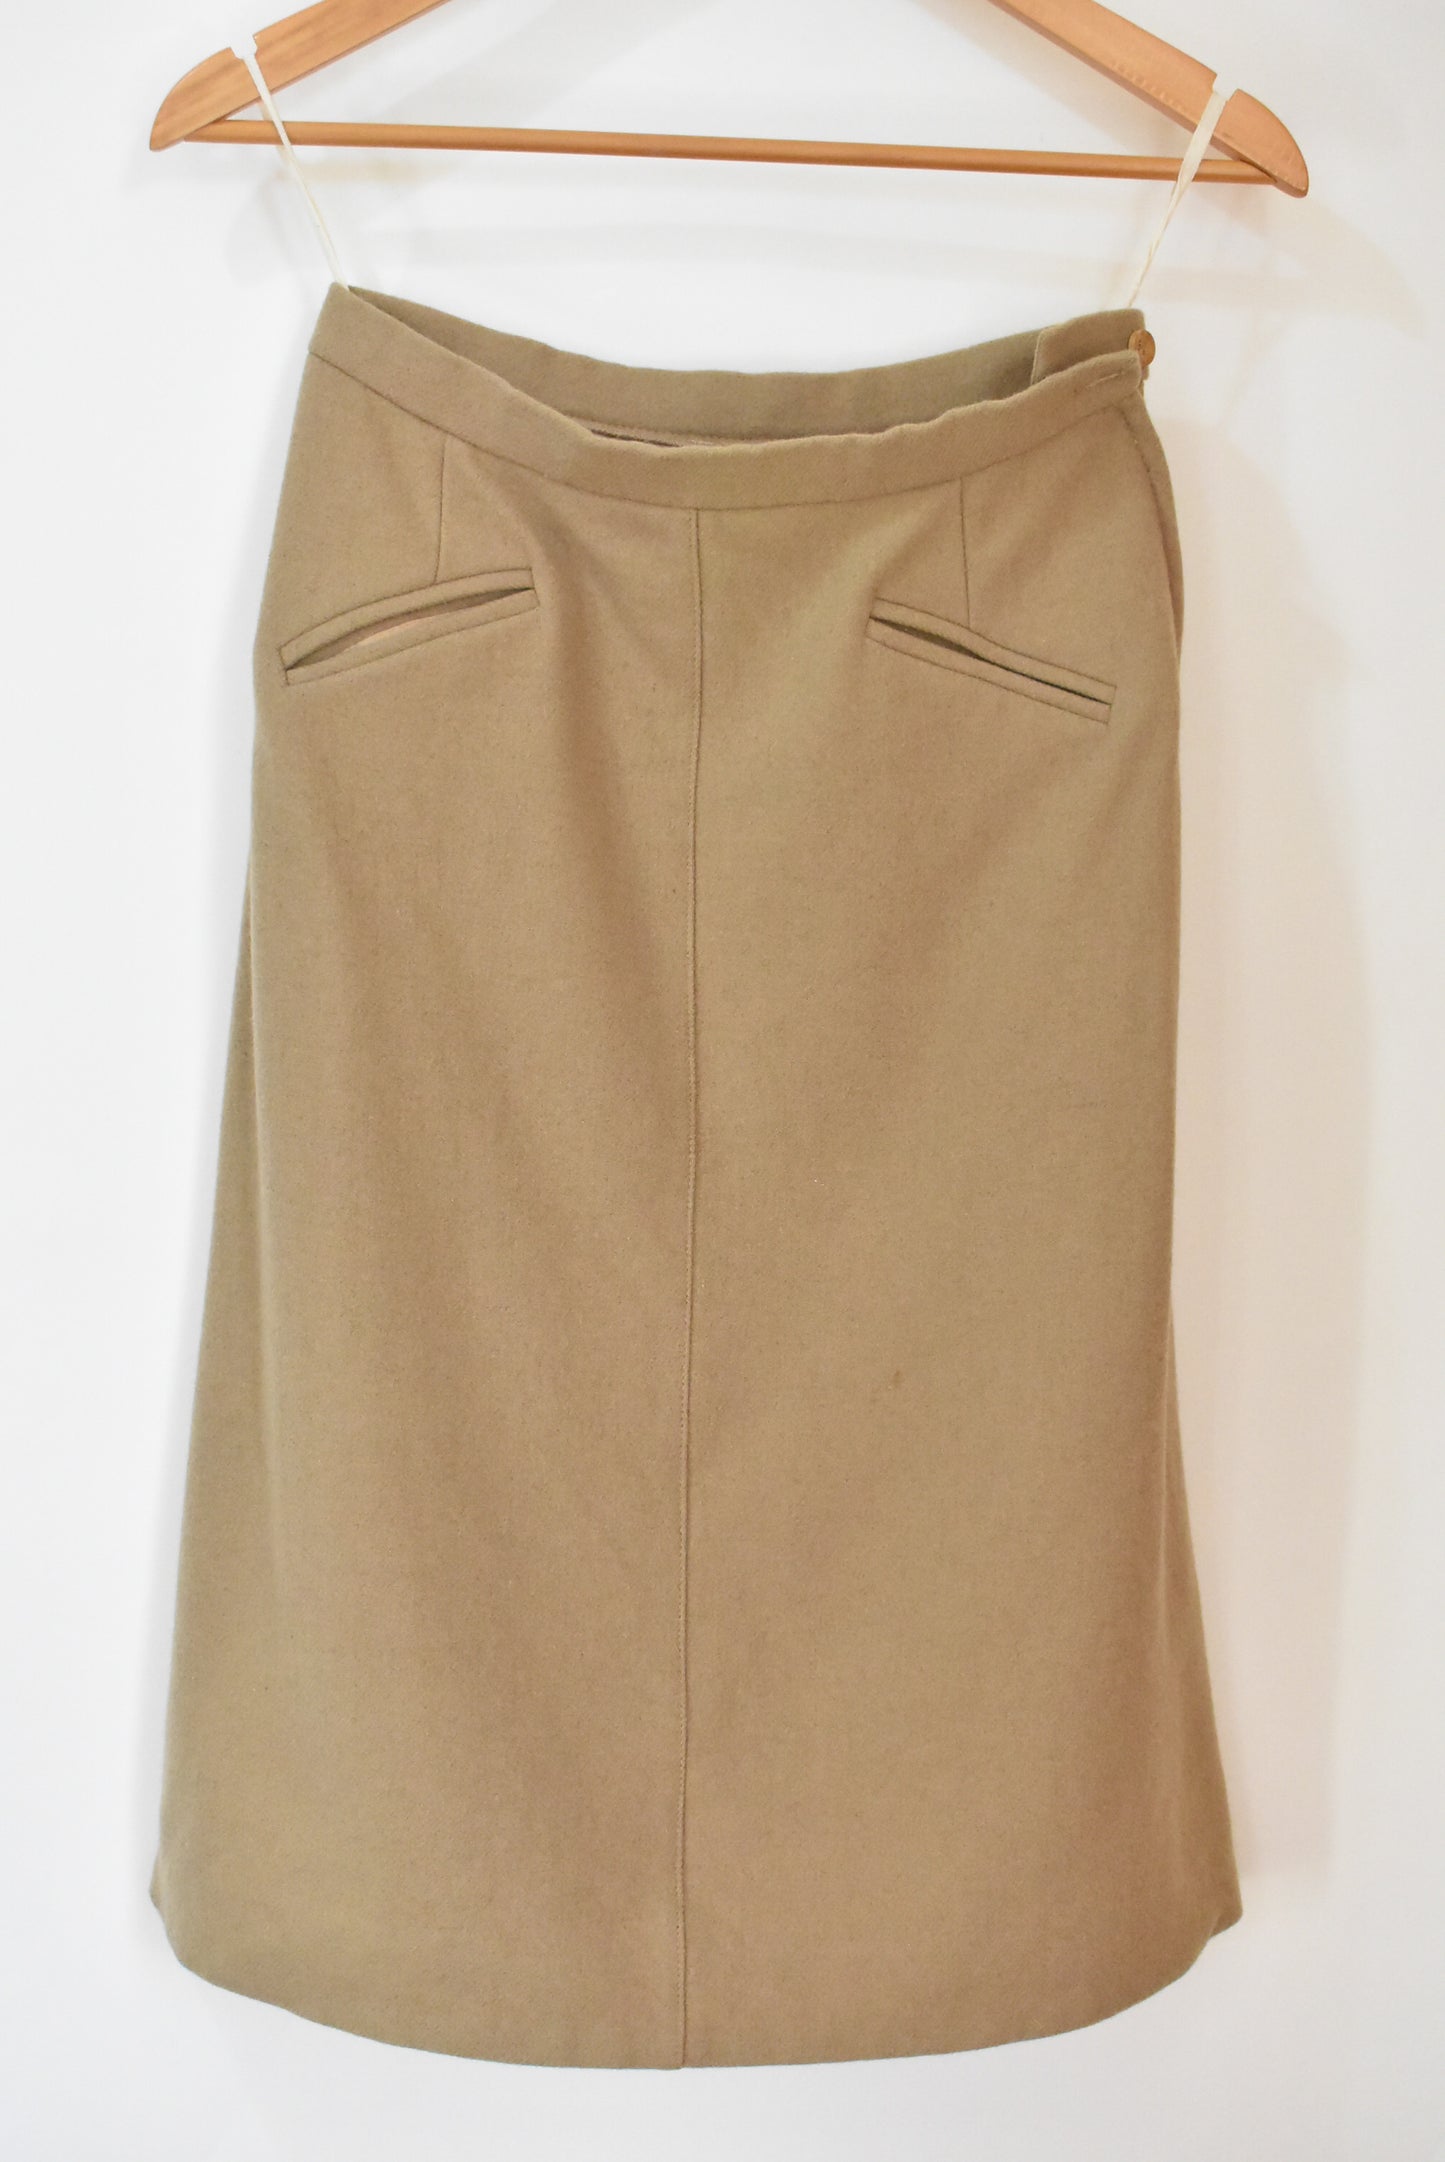 Dereta vintage skirt, 12